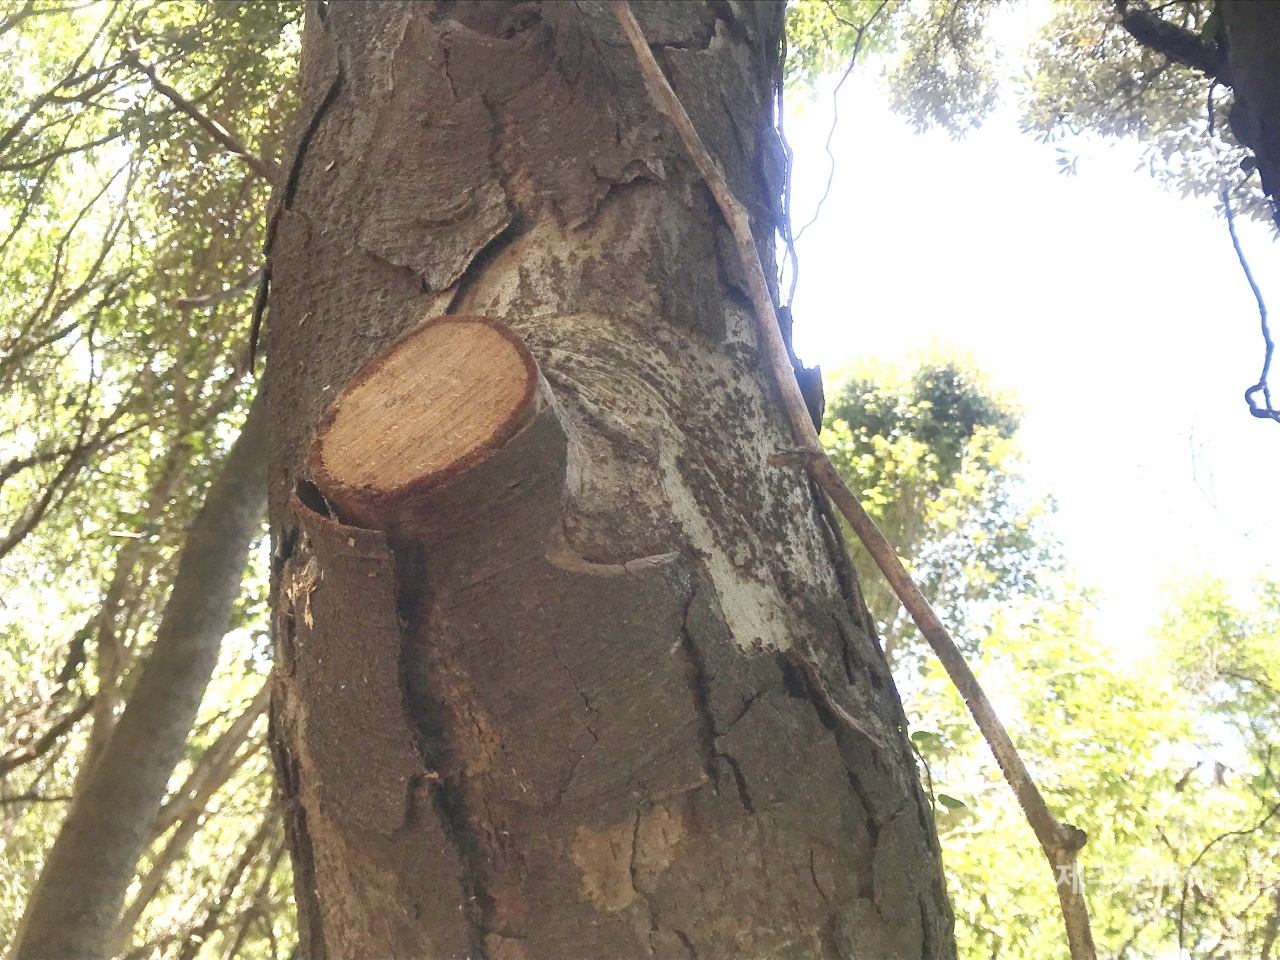 환경영향평가 시 누락된 개가시나무. 10cm 정도의 가지 두 개가 톱날에 잘려나간 모습. (사진=곶자왈사람들)